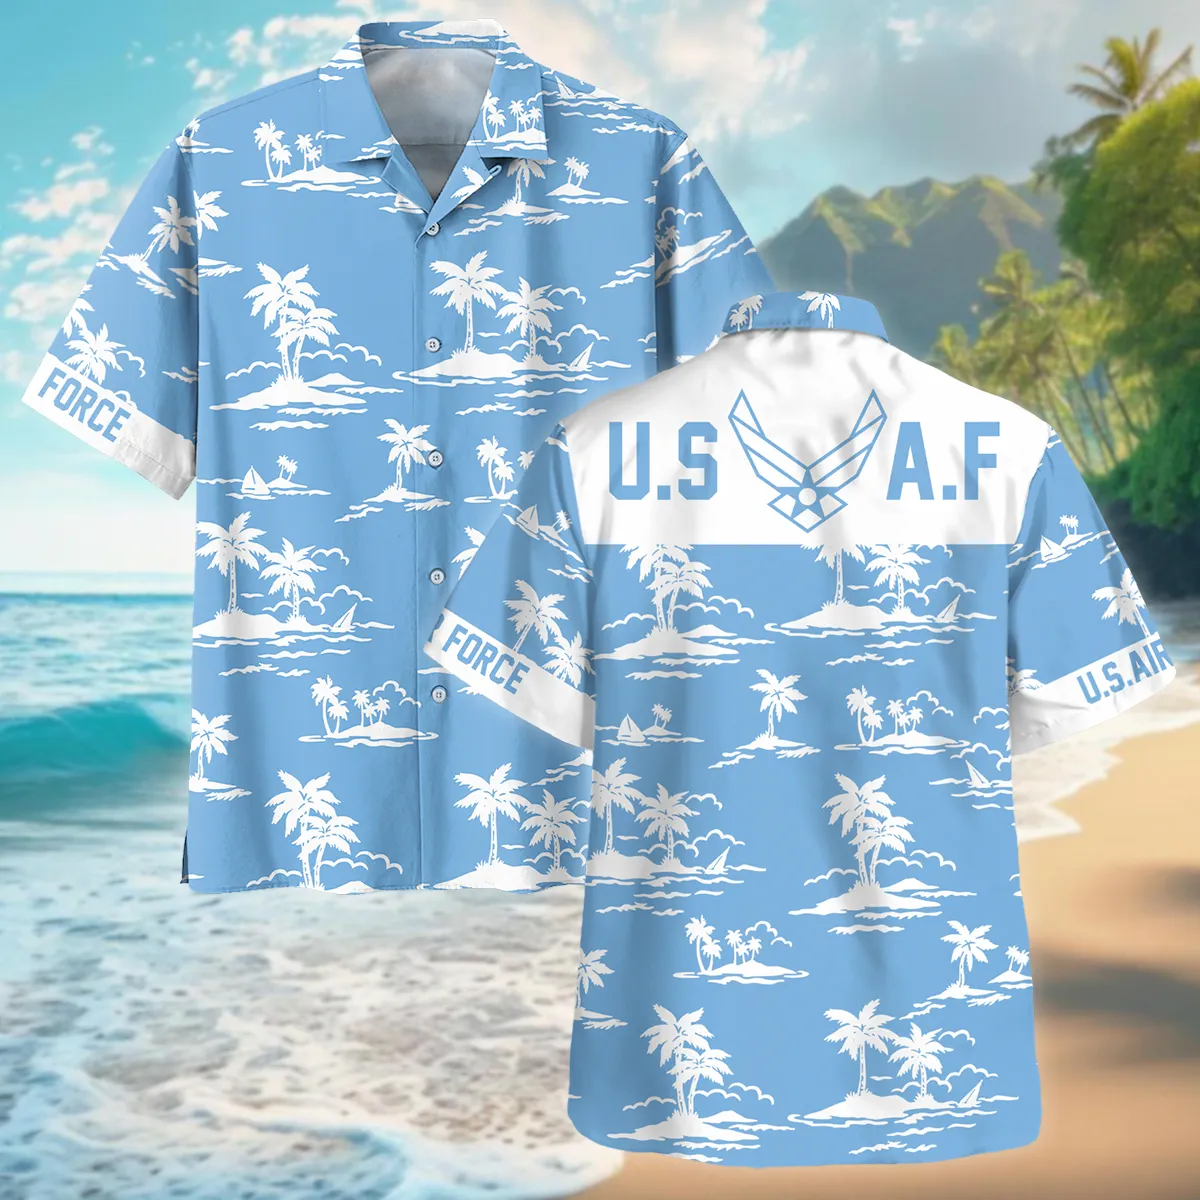 Hawaii Pattern Summer Beach Shirt Veteran U.S. Air Force All Over Prints Oversized Hawaiian Shirt